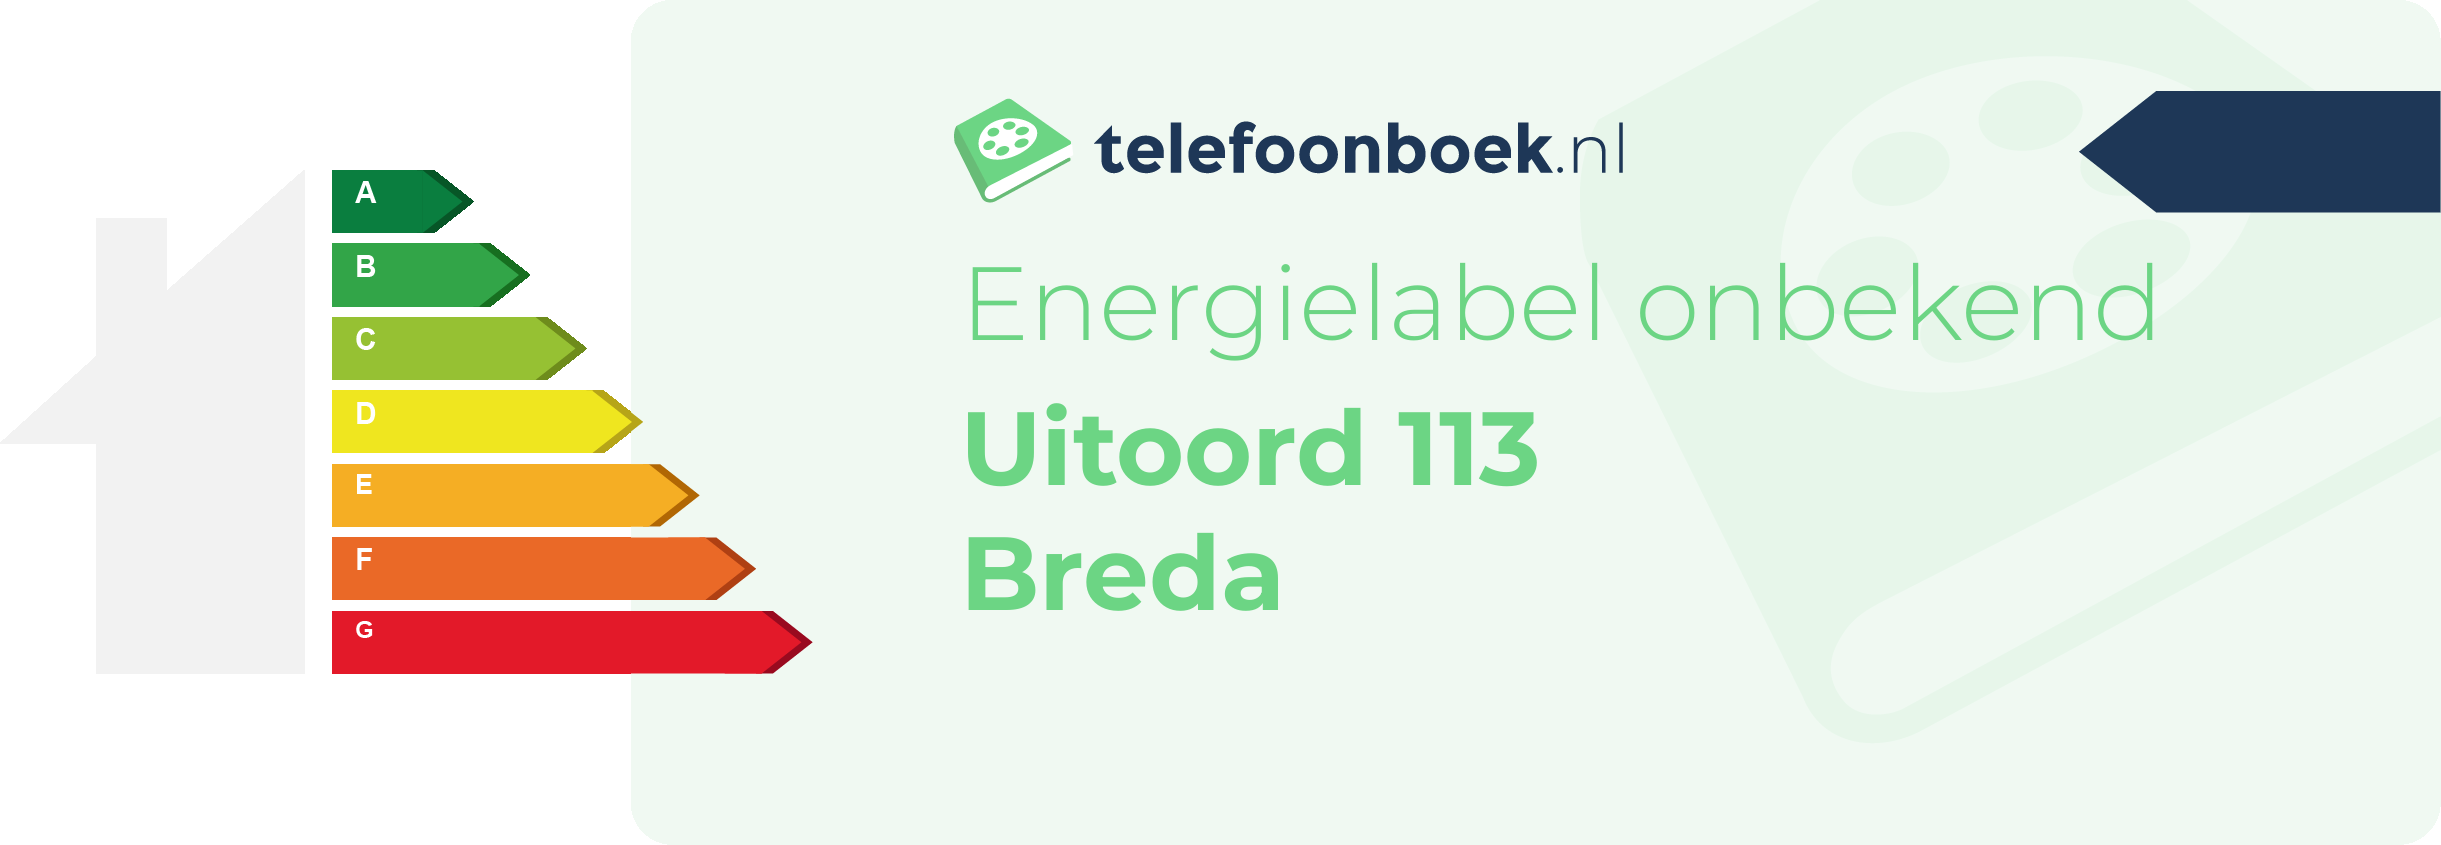 Energielabel Uitoord 113 Breda